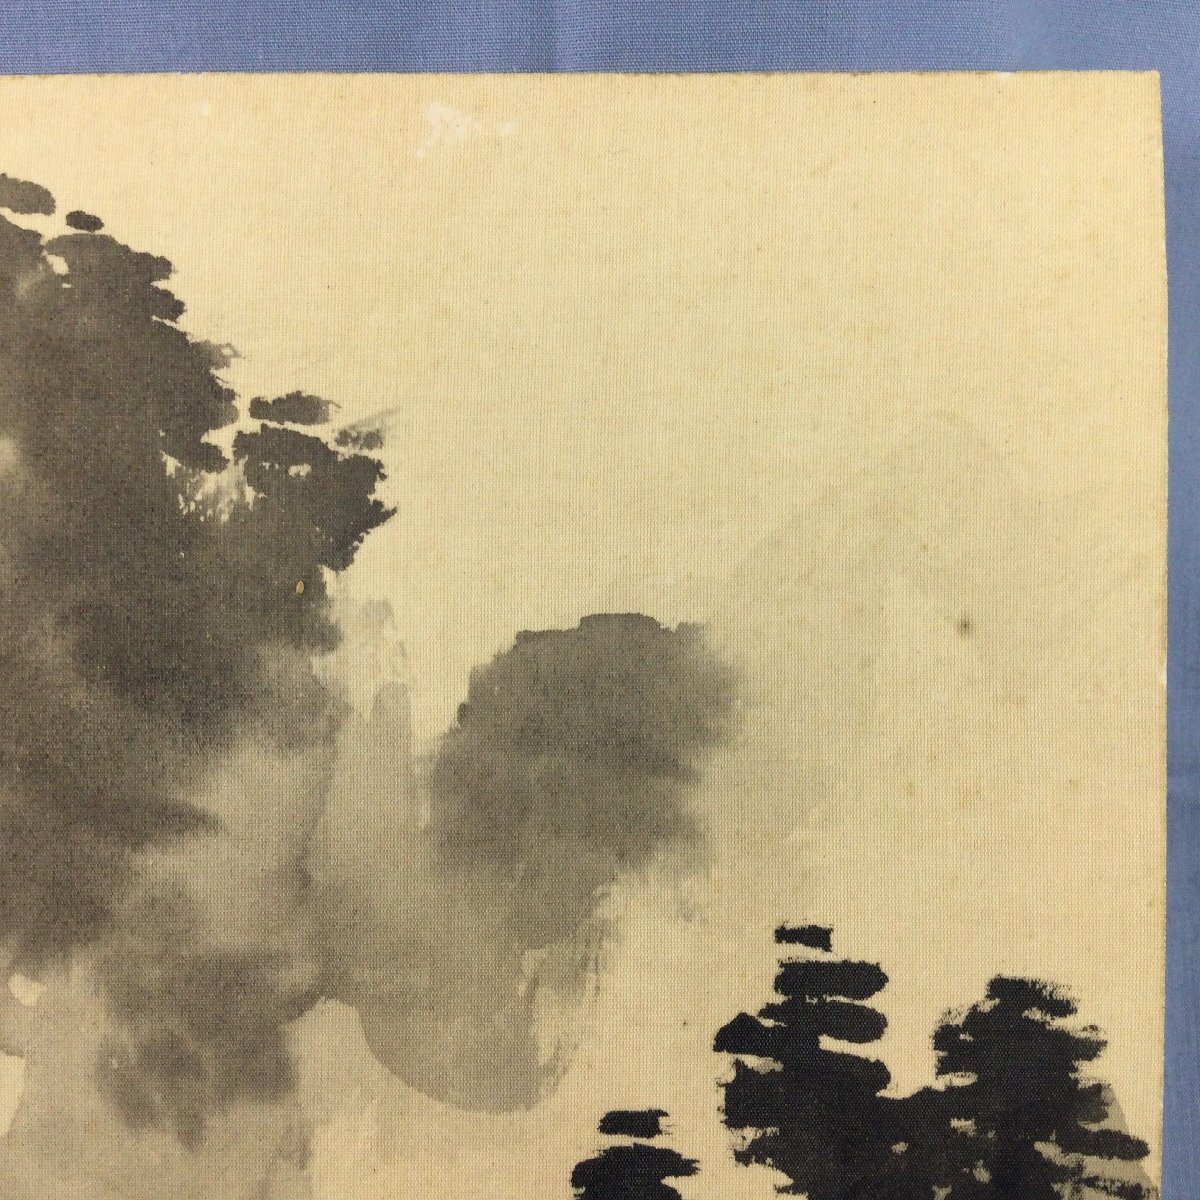 【三】色紙 山水 家々 木々 森 山脈 詳細不明 サインあり 落款あり s3852_B252の画像4